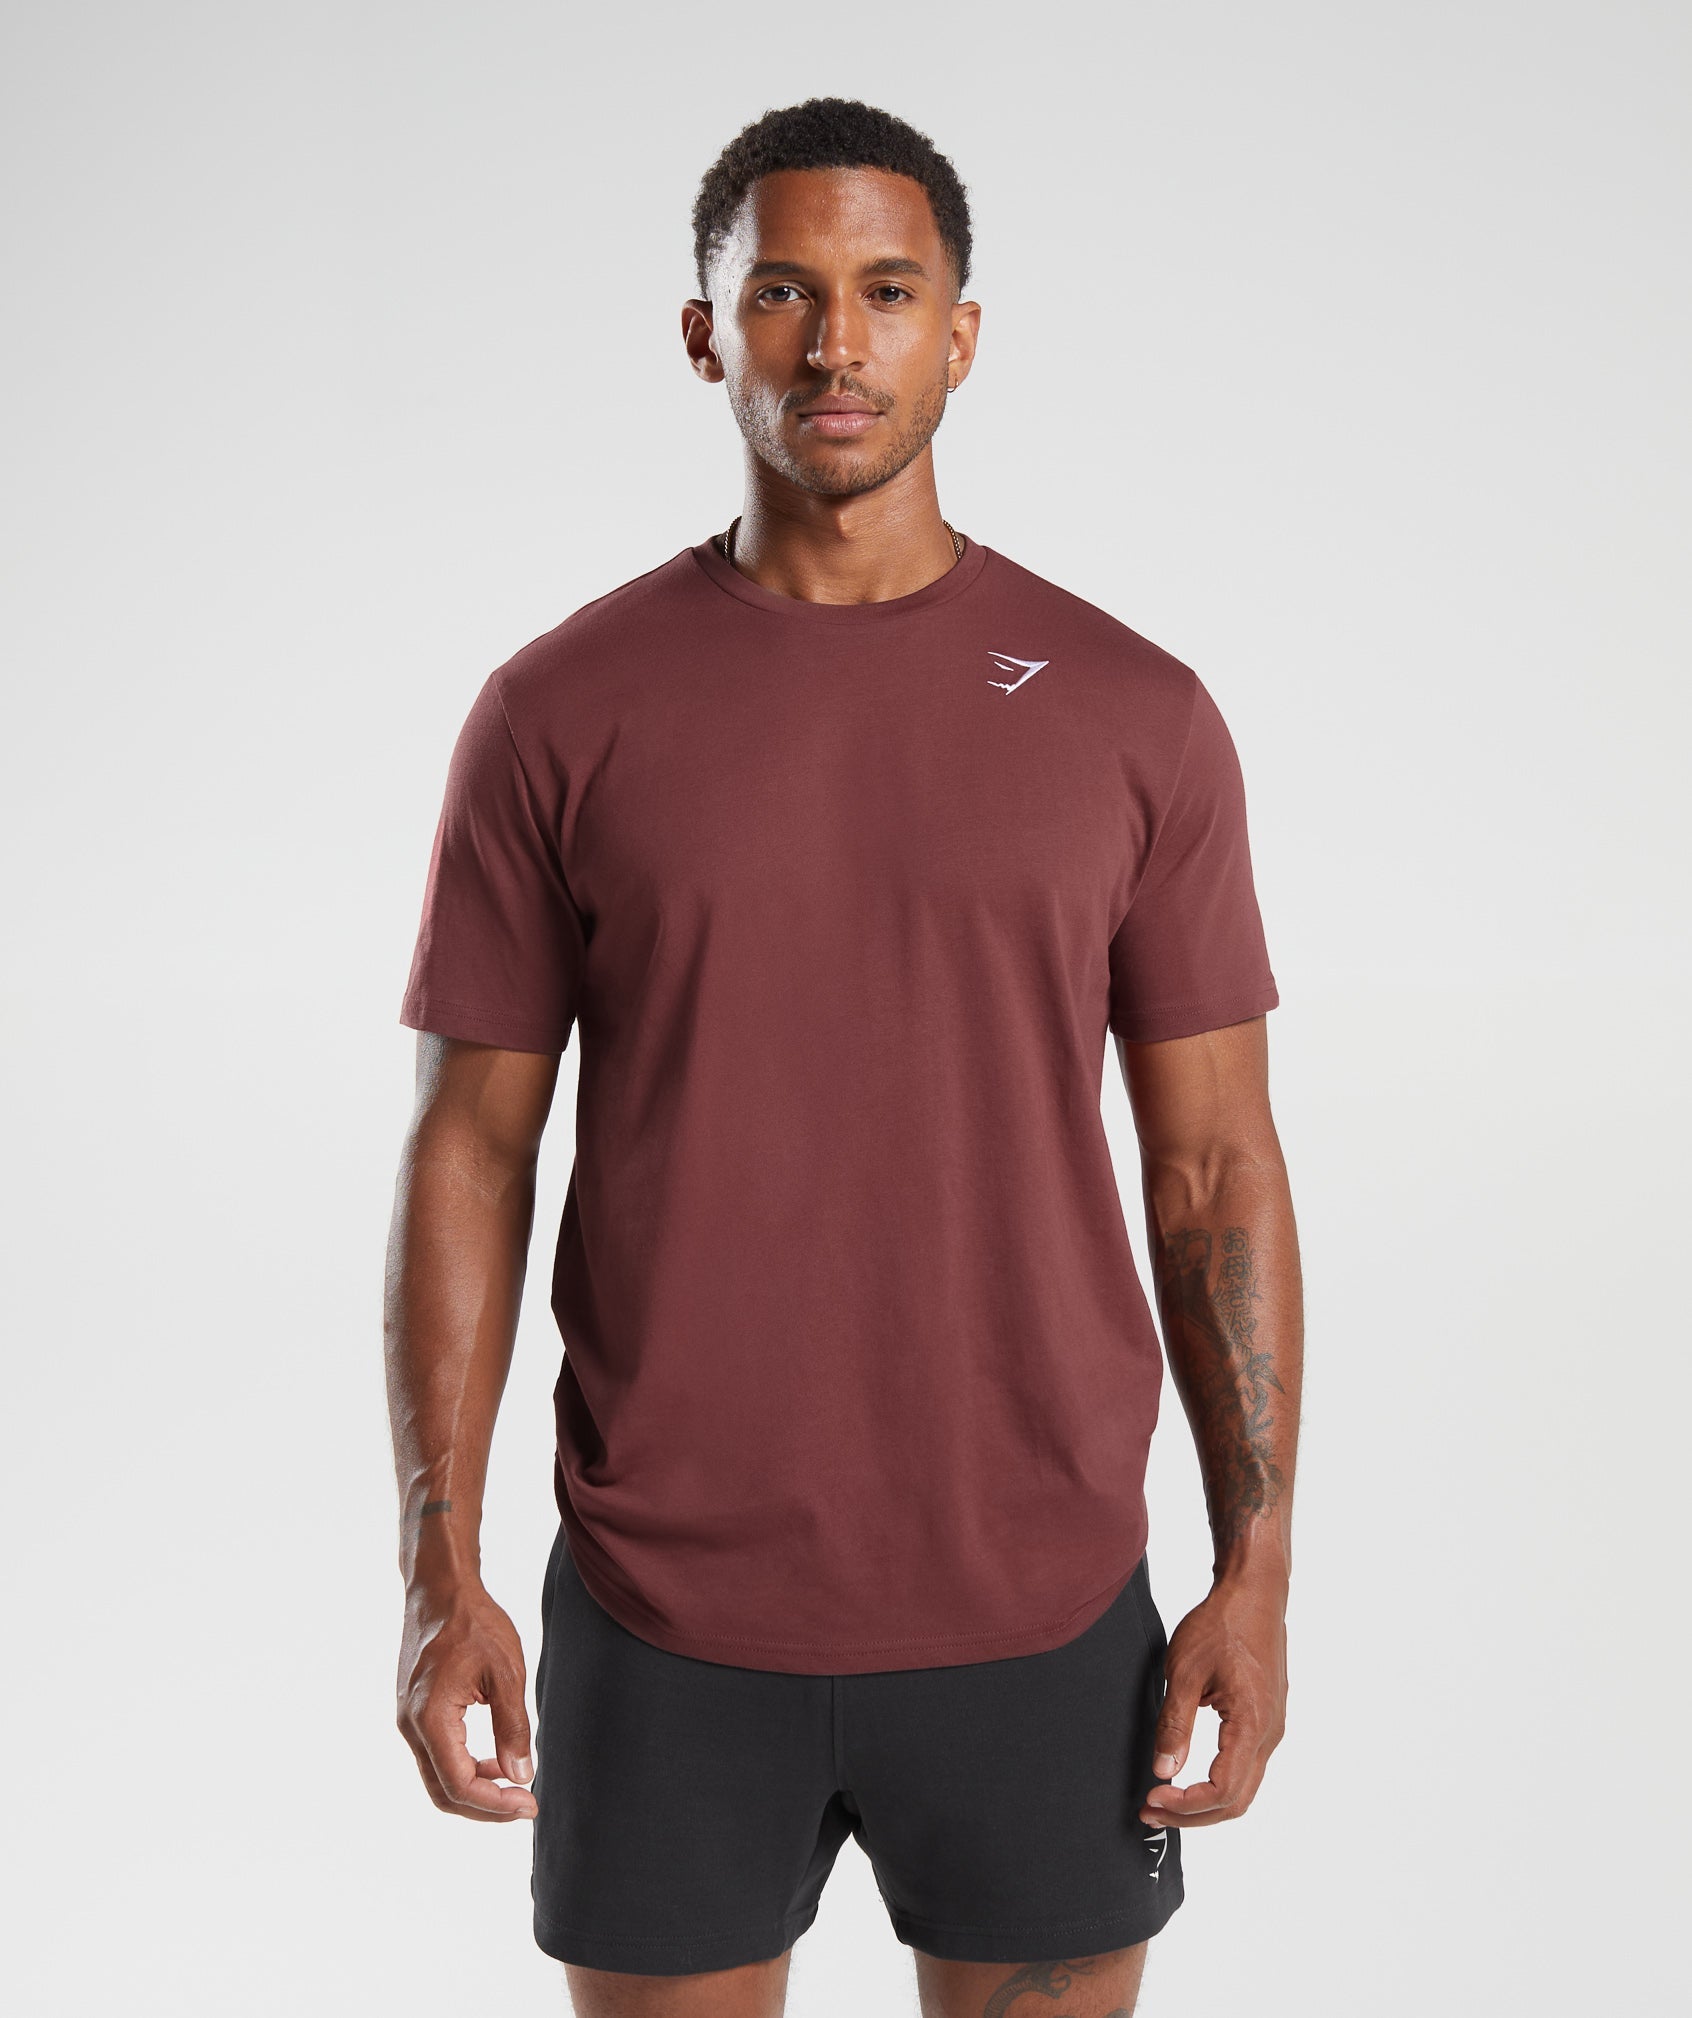 Gymshark Crest T-Shirt - Washed Burgundy